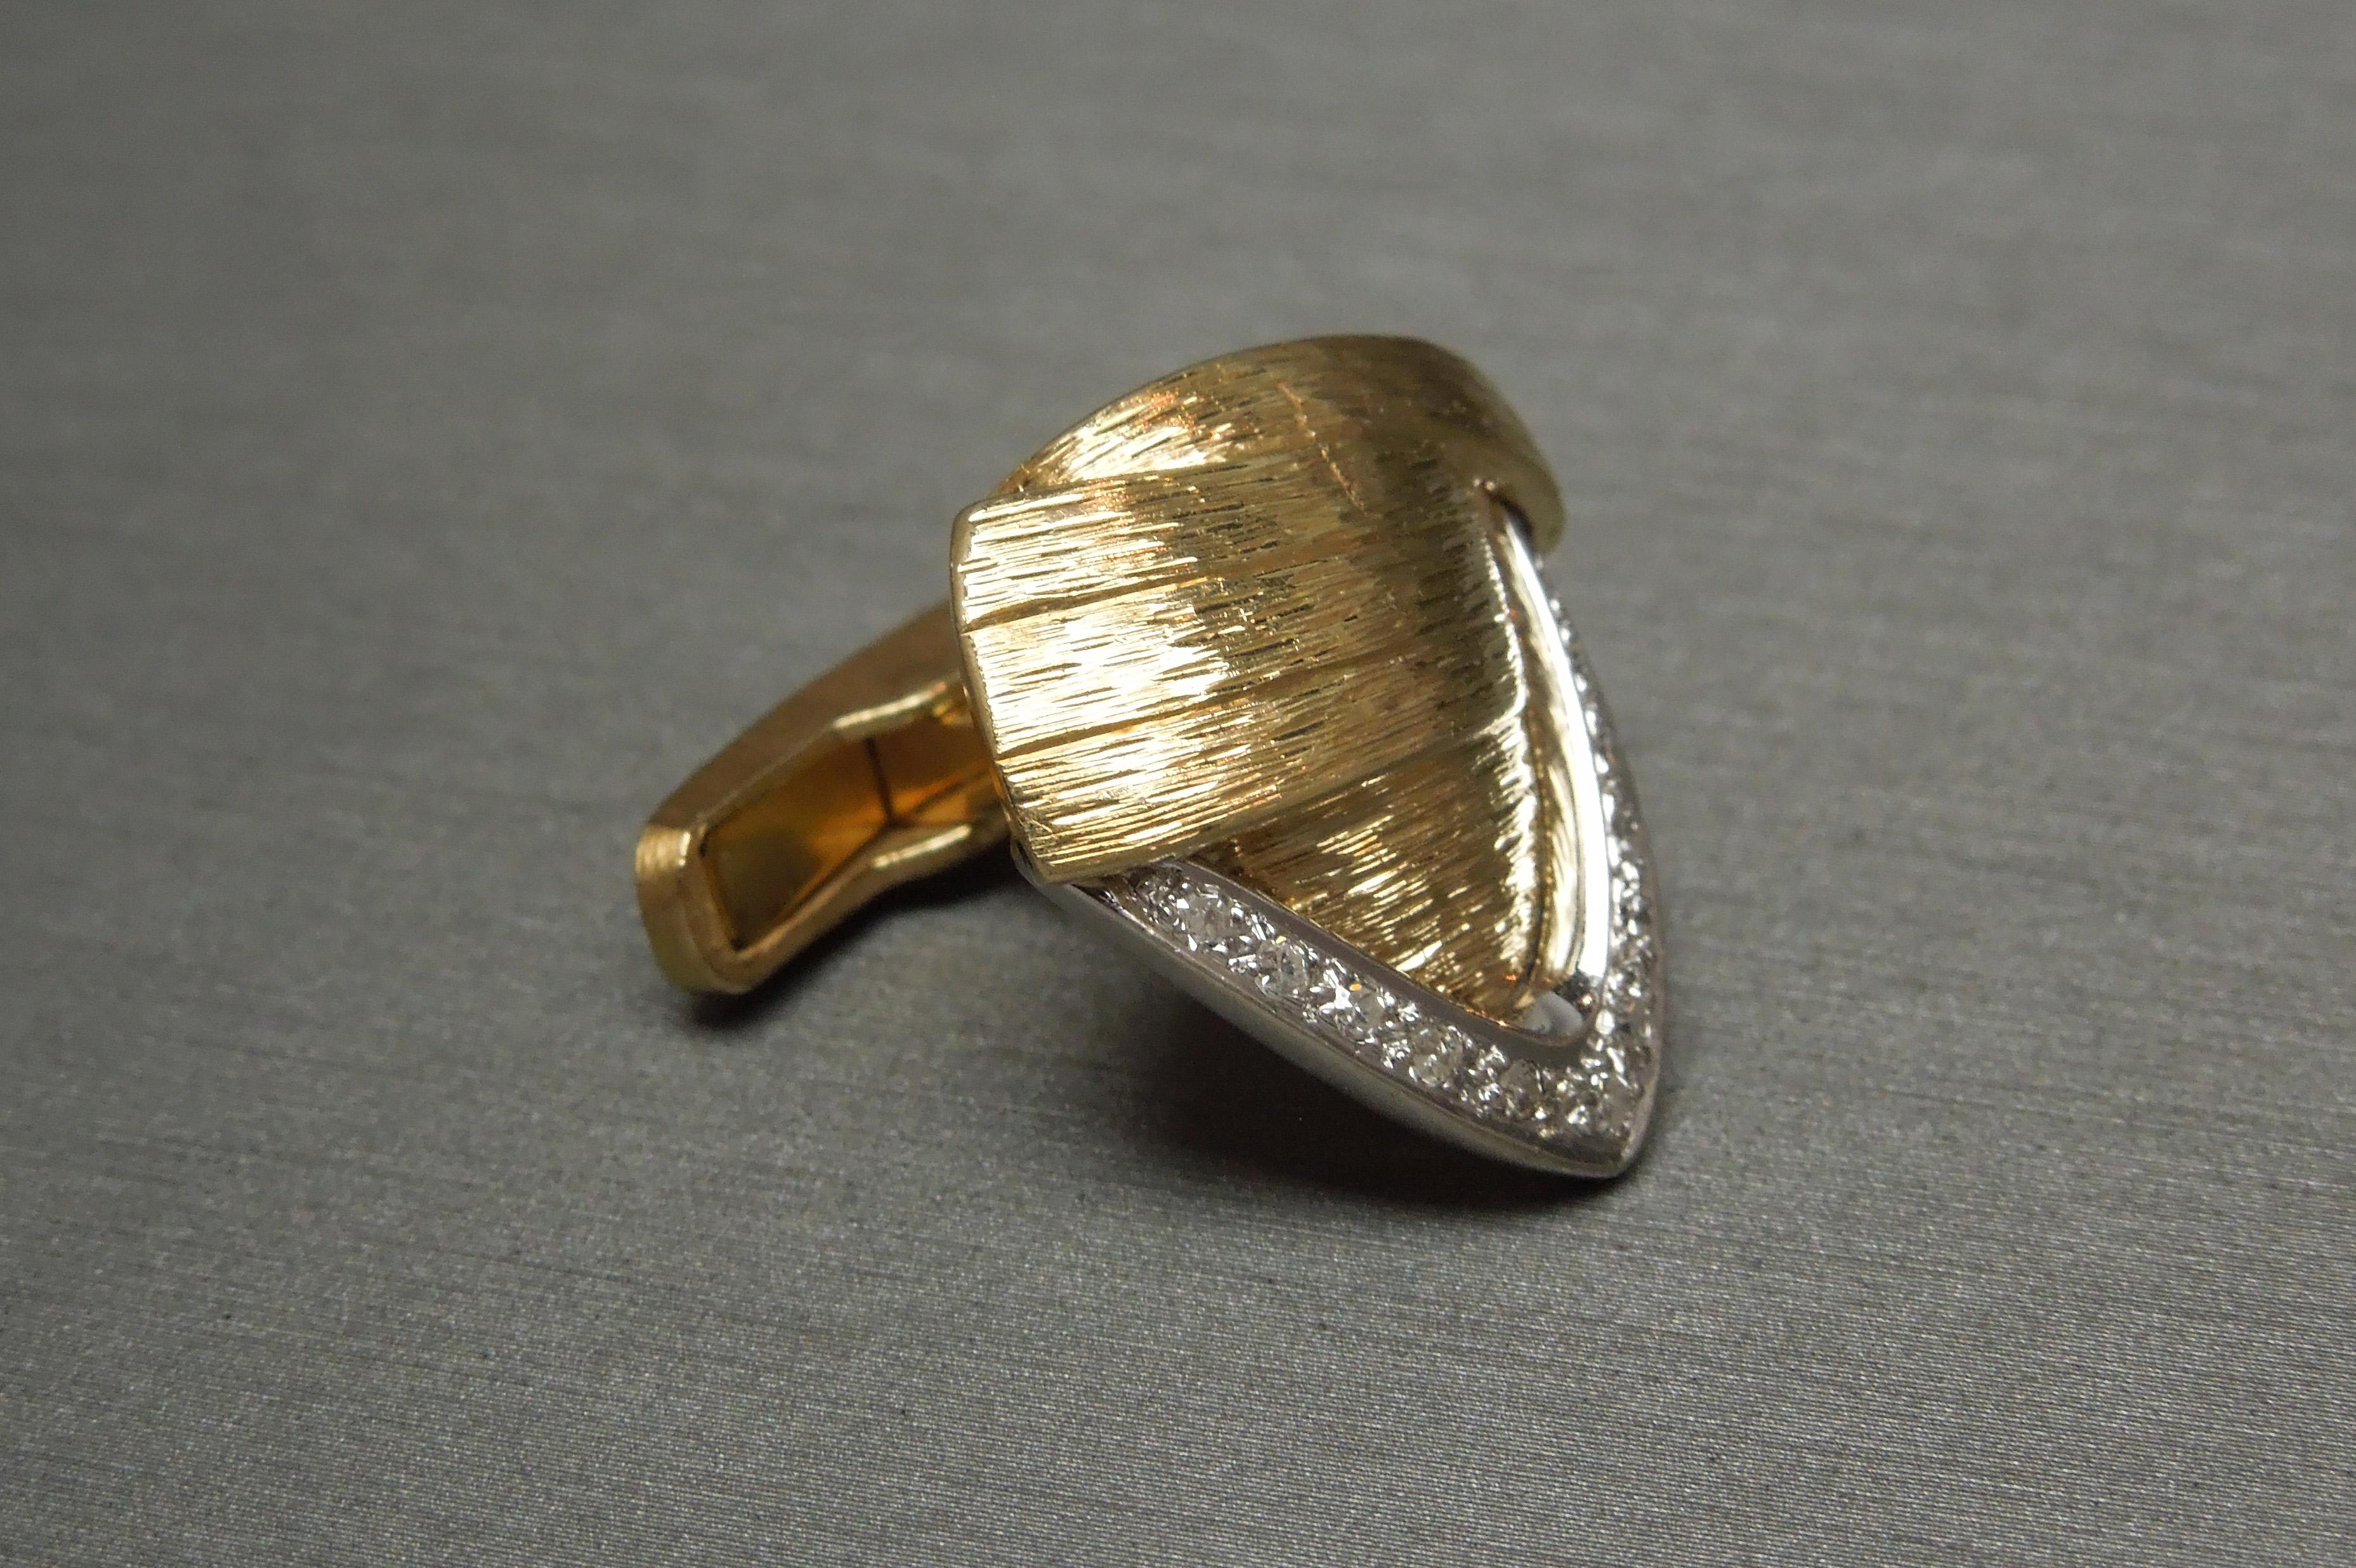 Diese Unisex 14KT Gold Diamant Manschettenknöpfe sind in einem Retro dreieckigen Manschetten Design, mit einem strukturierten Detail im gesamten konstruiert. Vorwiegend Gelbgold mit Abschnitten aus Weißgold, die insgesamt 0,80 Karat nahezu farblose,